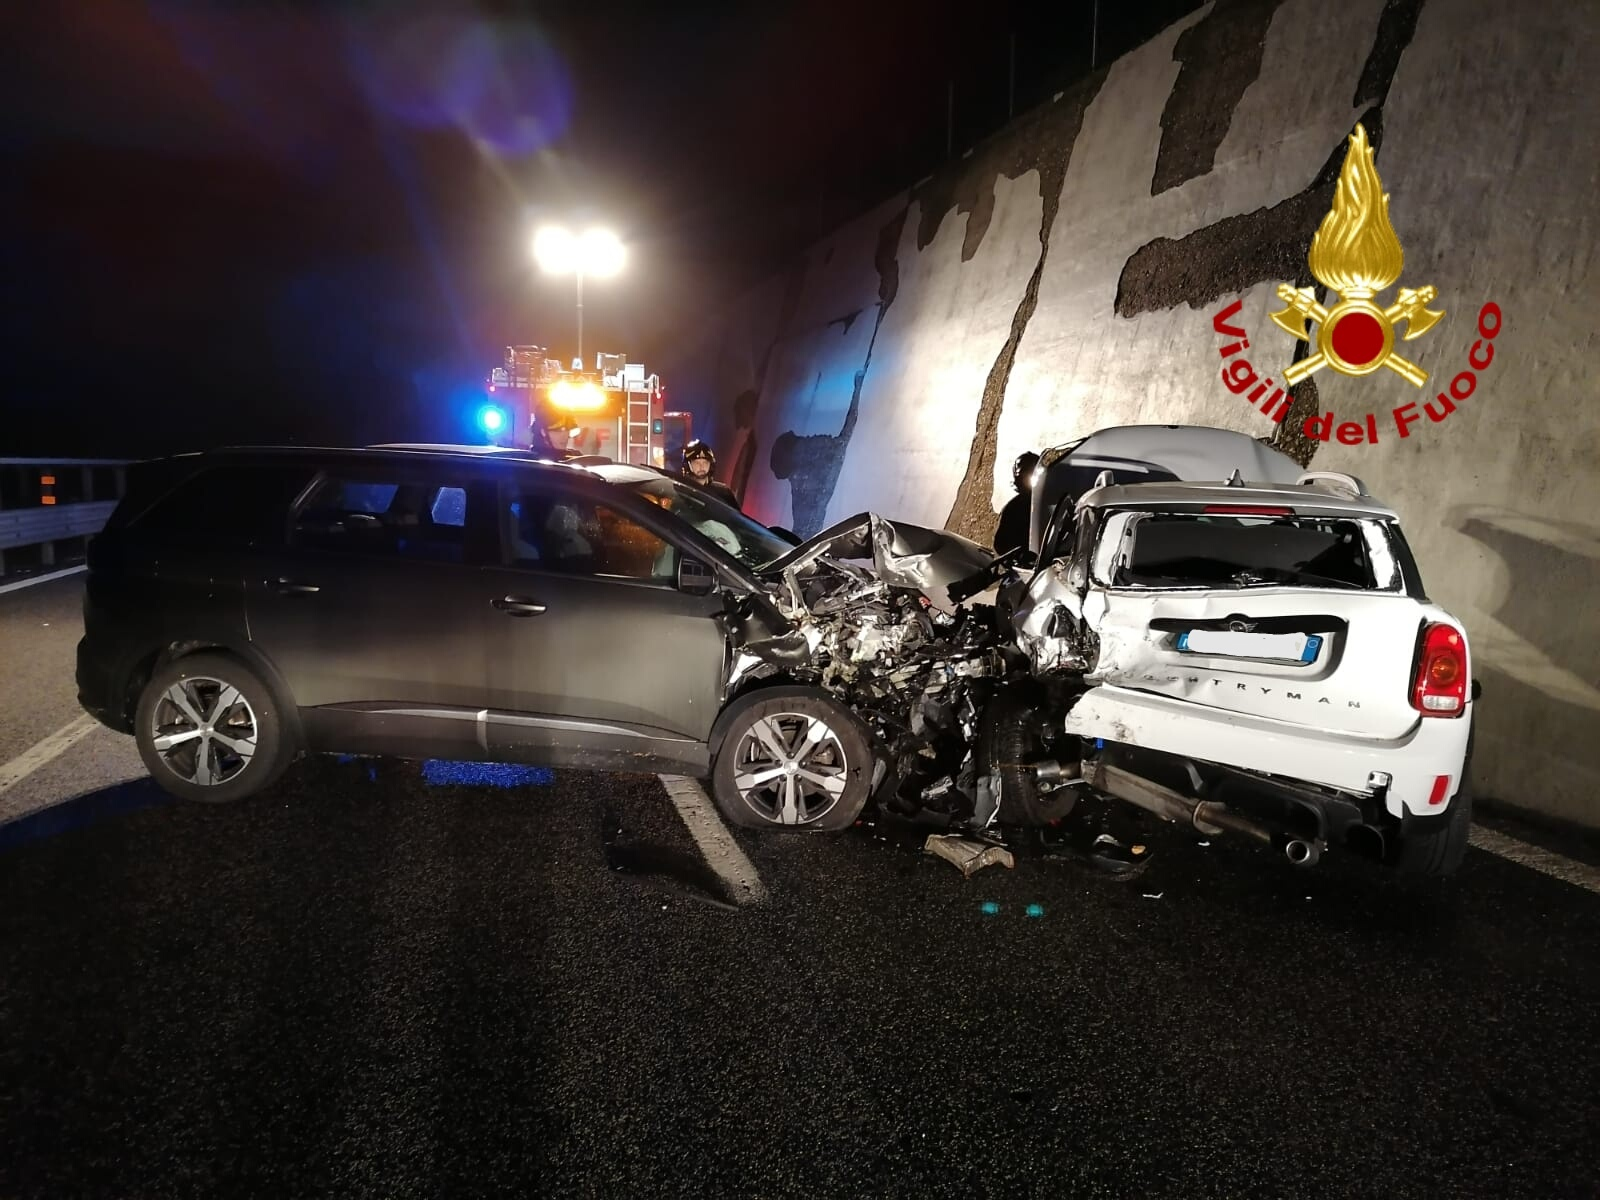 Monteforte Irpino| Incidente tra due auto sulla Napoli-Canosa, due feriti in ospedale